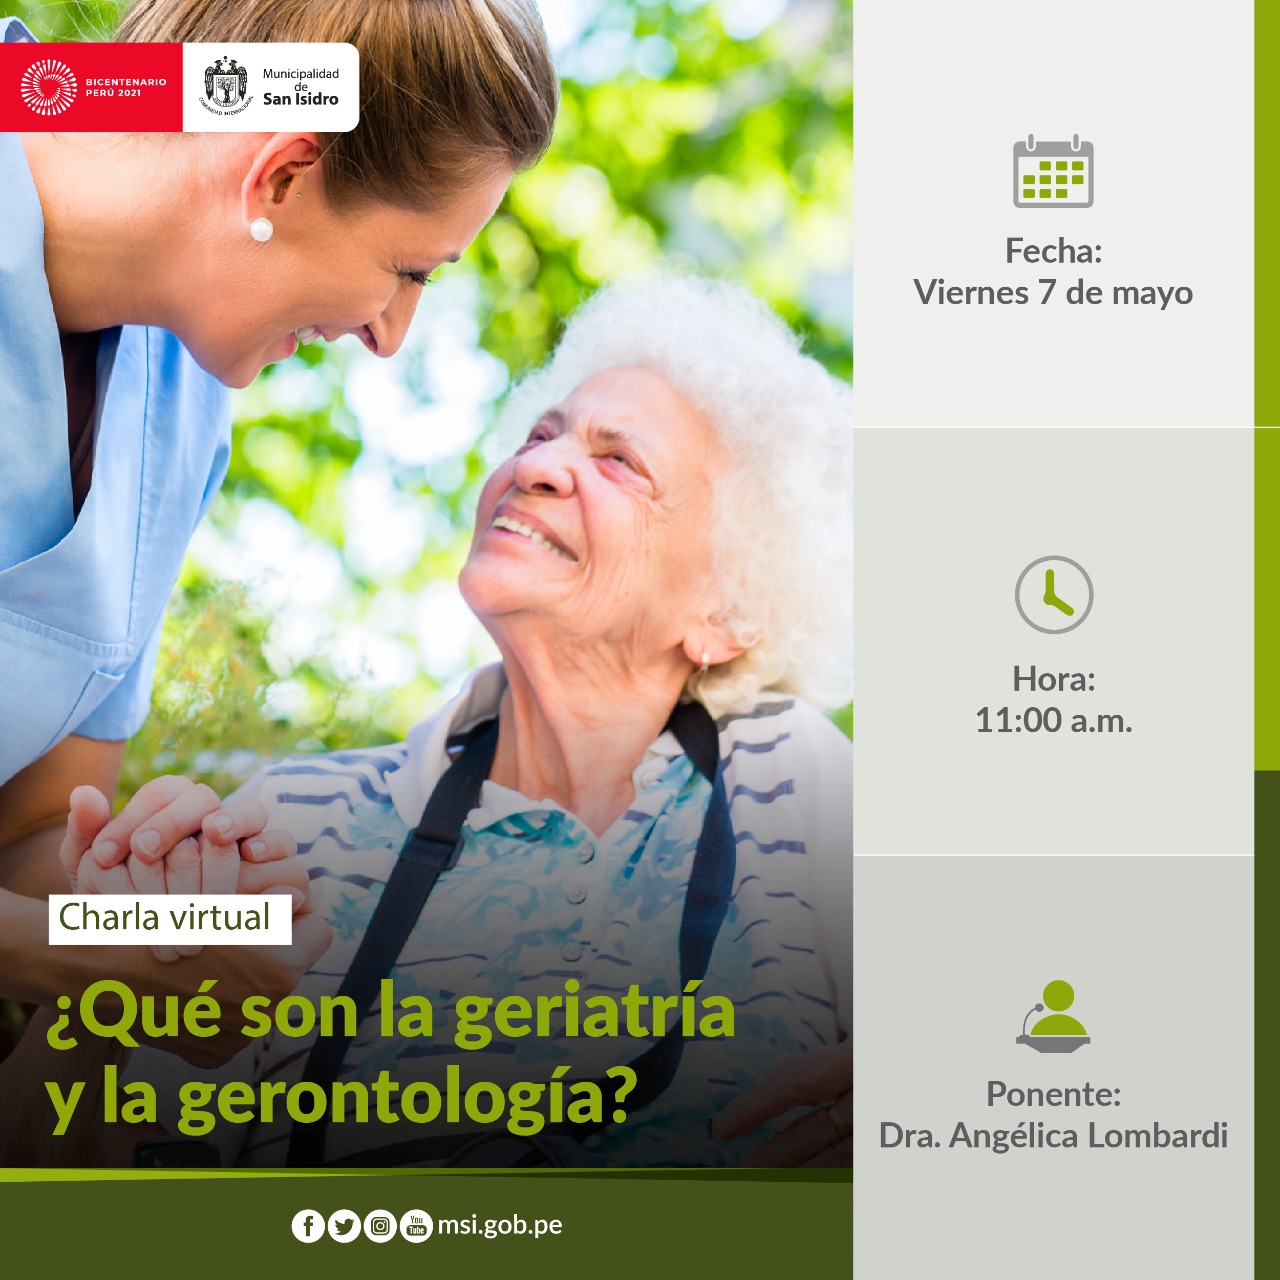 ¿Qué es la geriatría y gerontología?